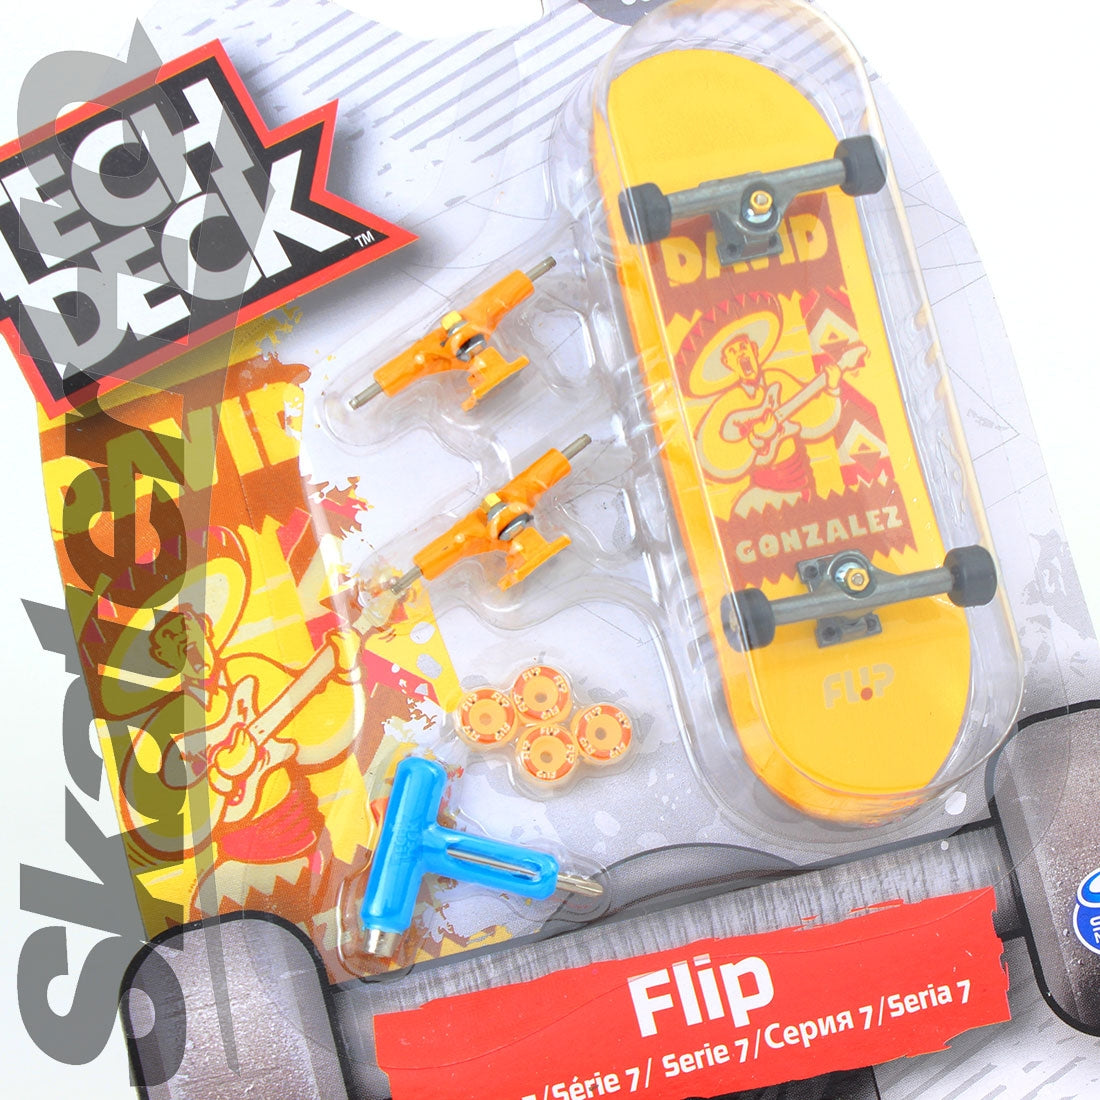 Tech Deck Series 7 - Flip - David Gonzalez Skateboard Accessories